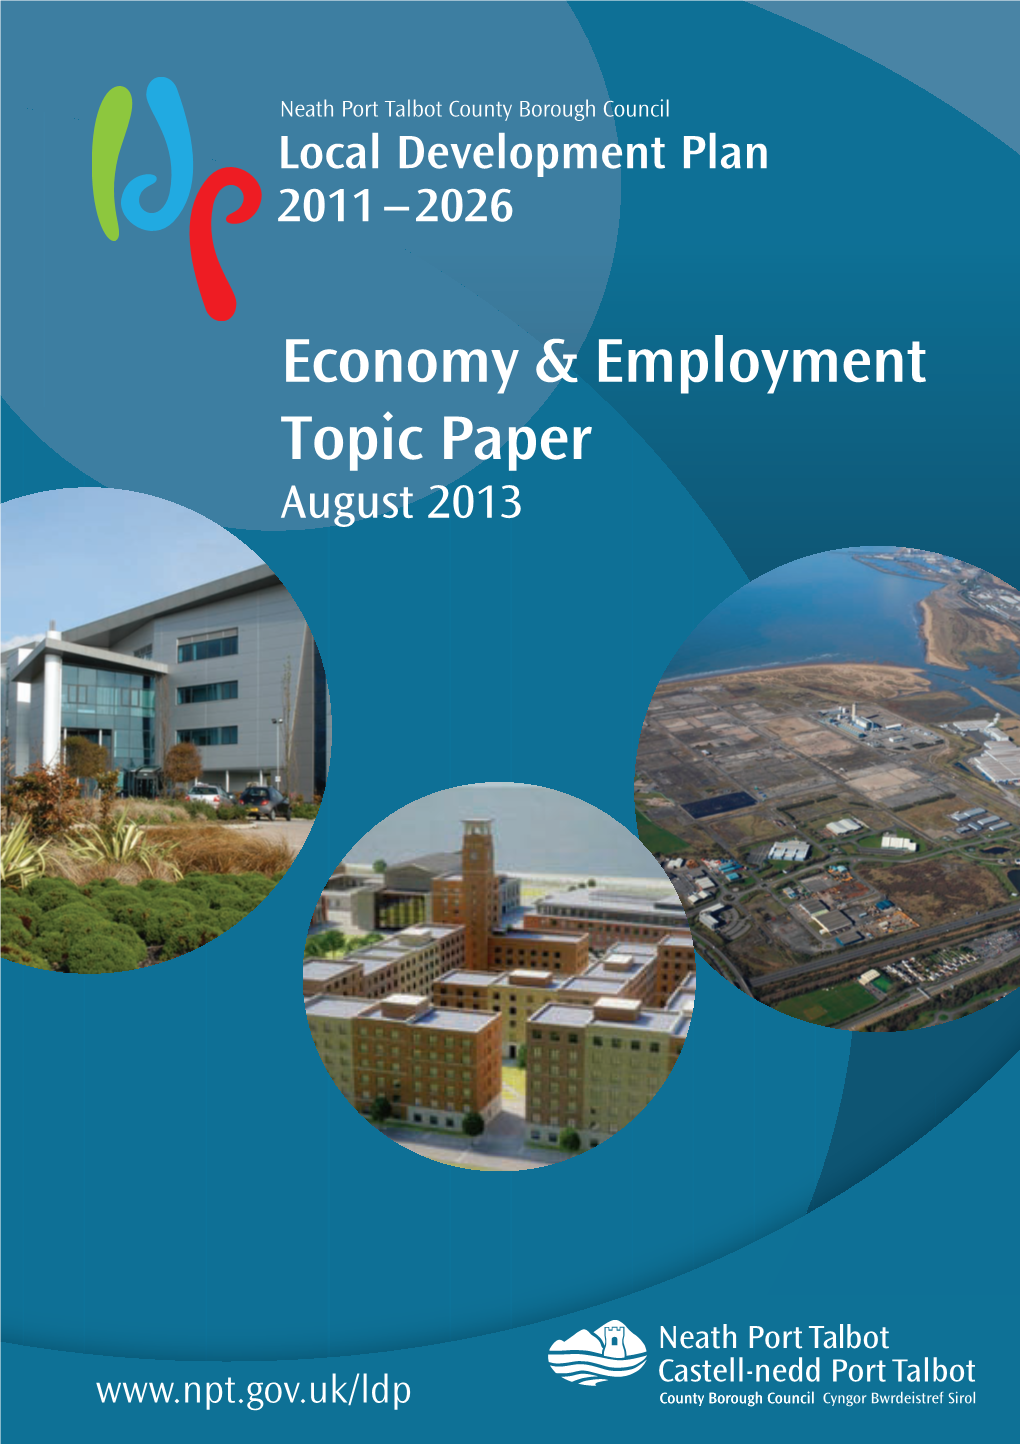 Economy & Employment Topic Paper